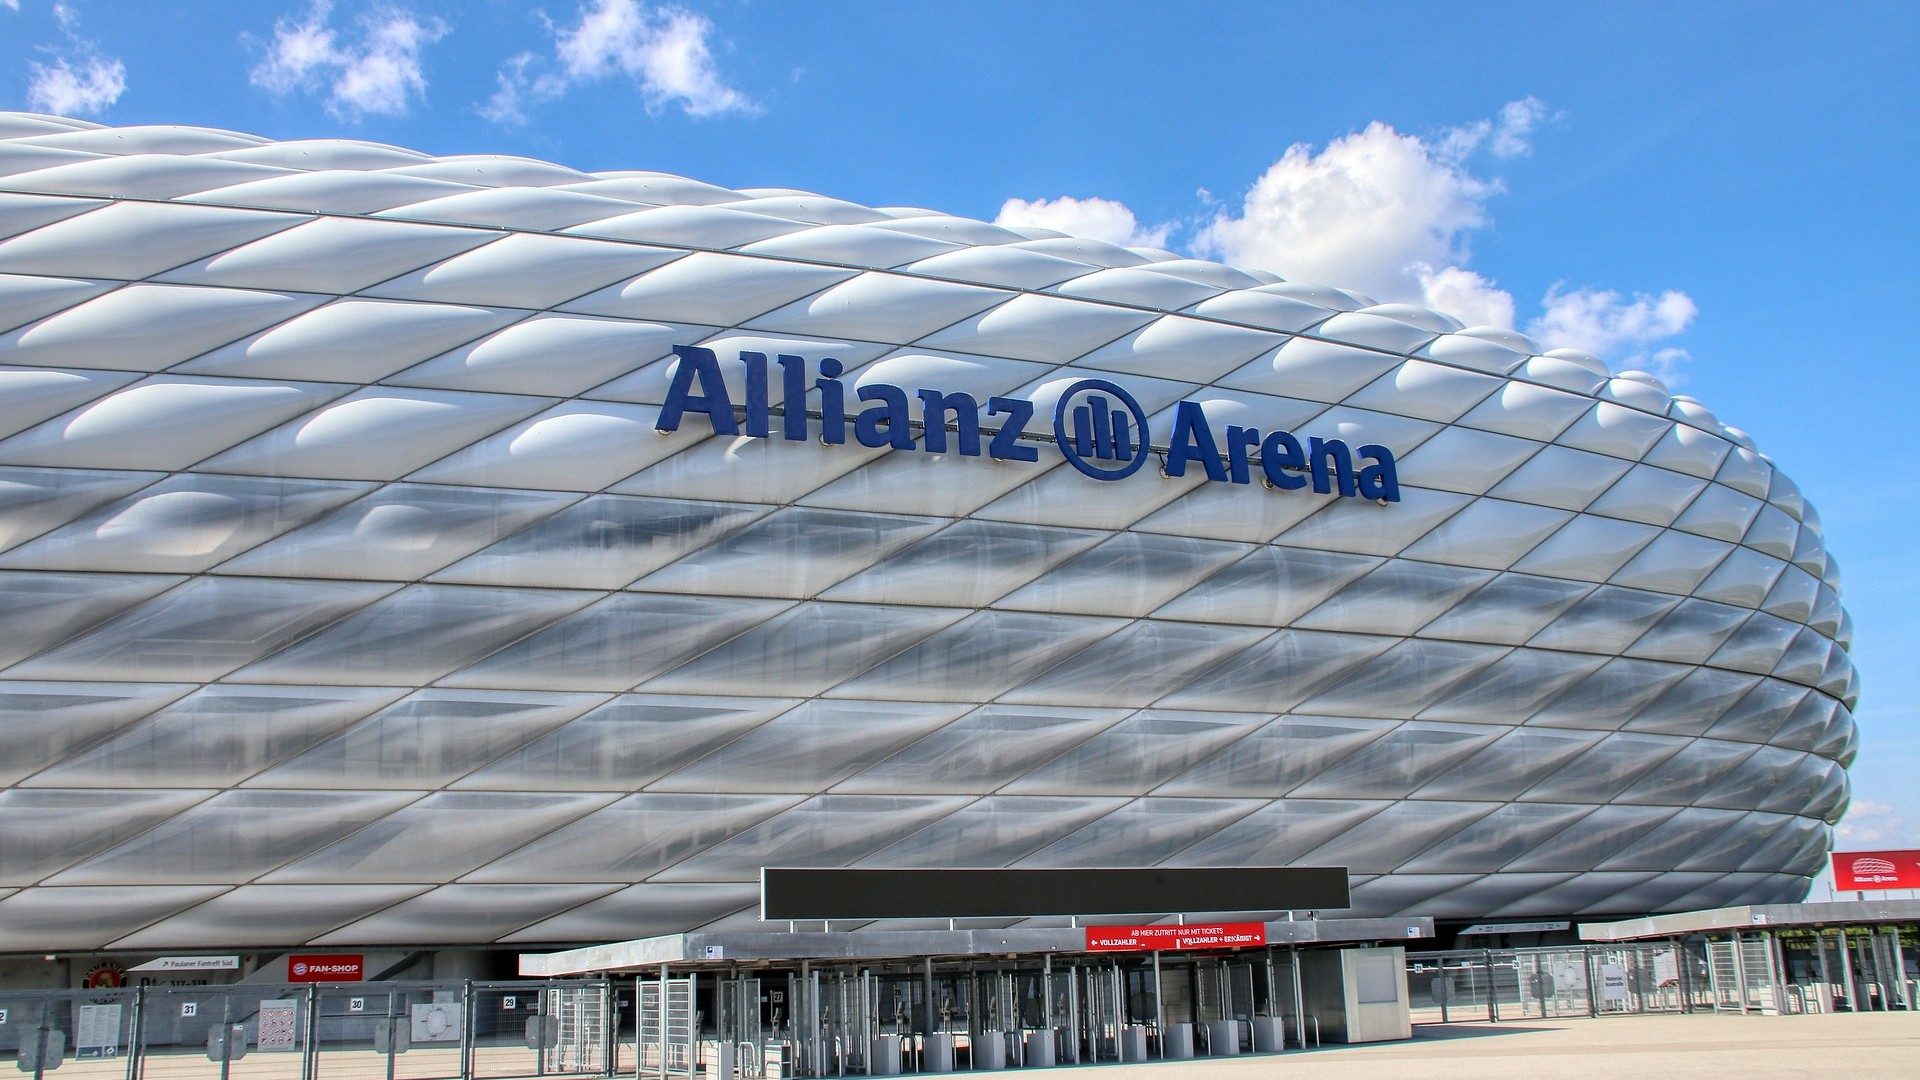 Das Stadion des FC Bayern München, die Allianz Arena